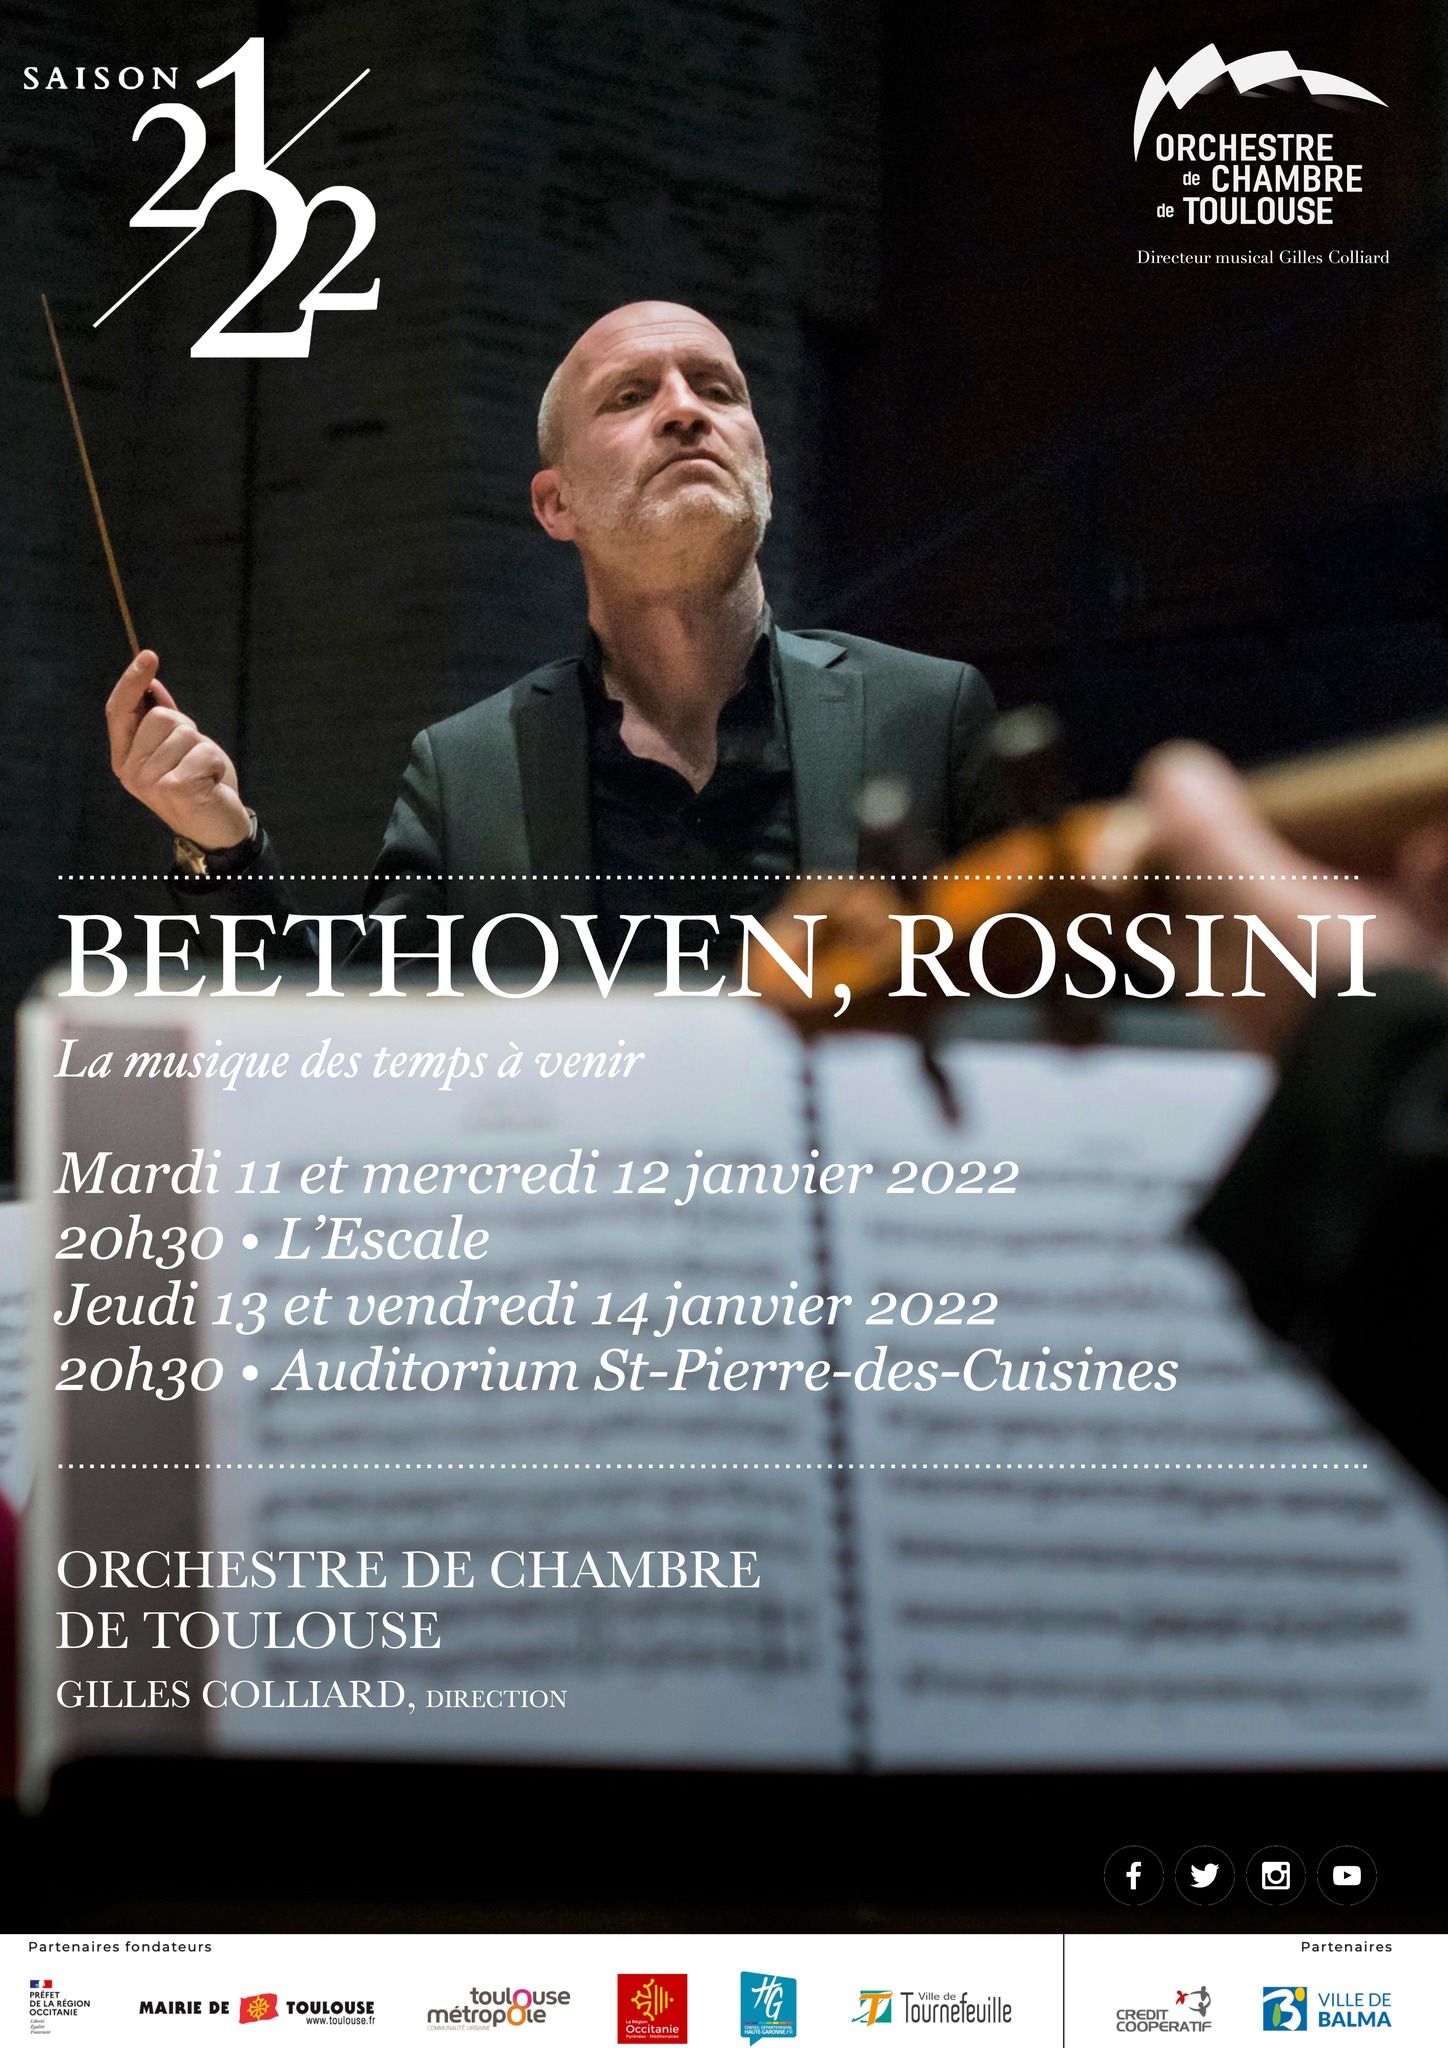 L'Escale - Orchestre de Chambre de Toulouse janvier 2022